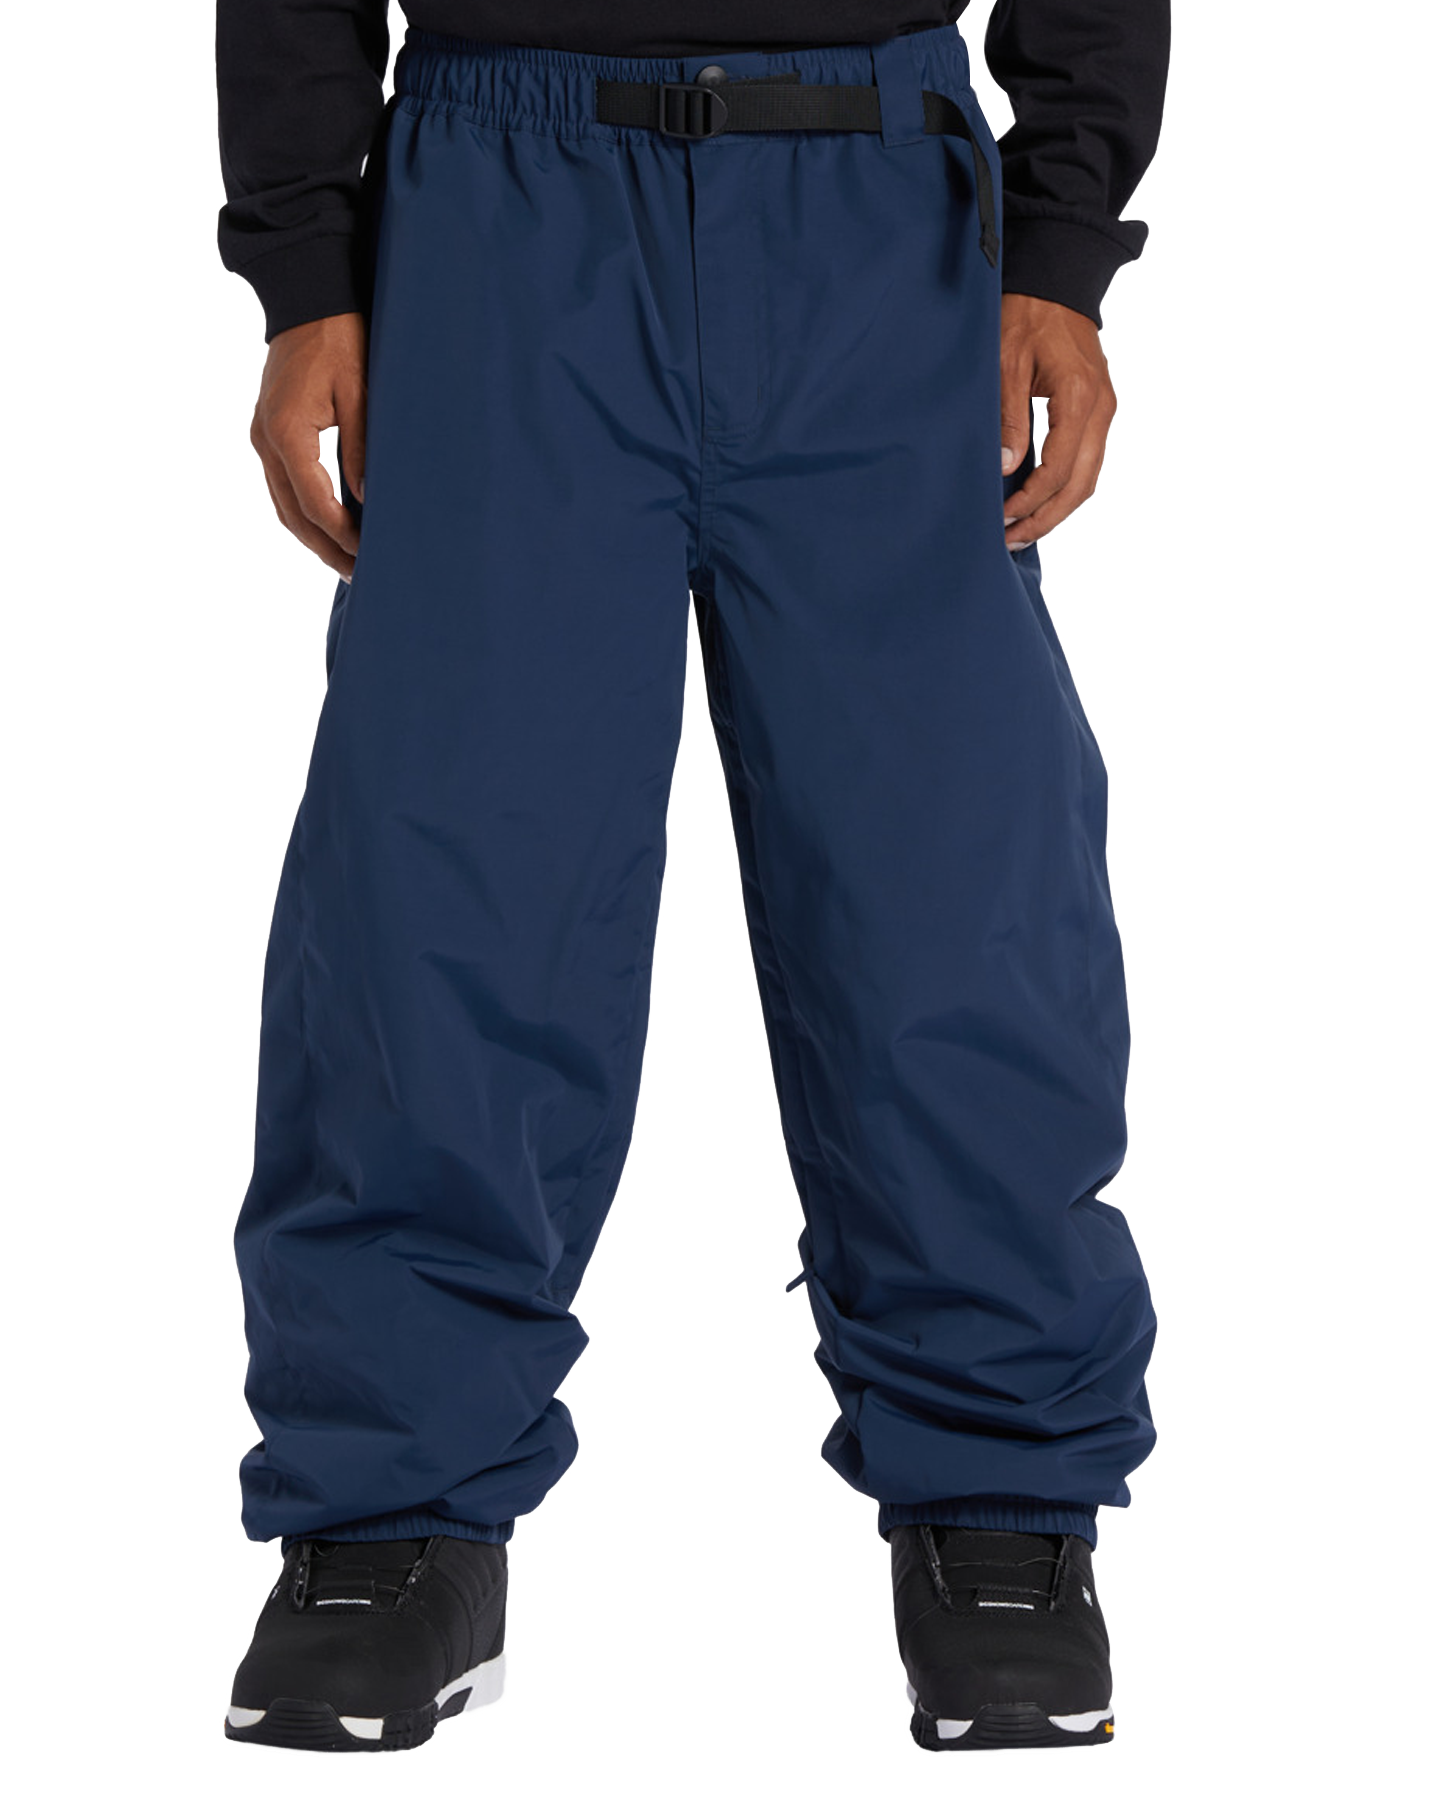 DC Primo Technical Snow Pants - Dress Blues Men's Snow Pants - SnowSkiersWarehouse